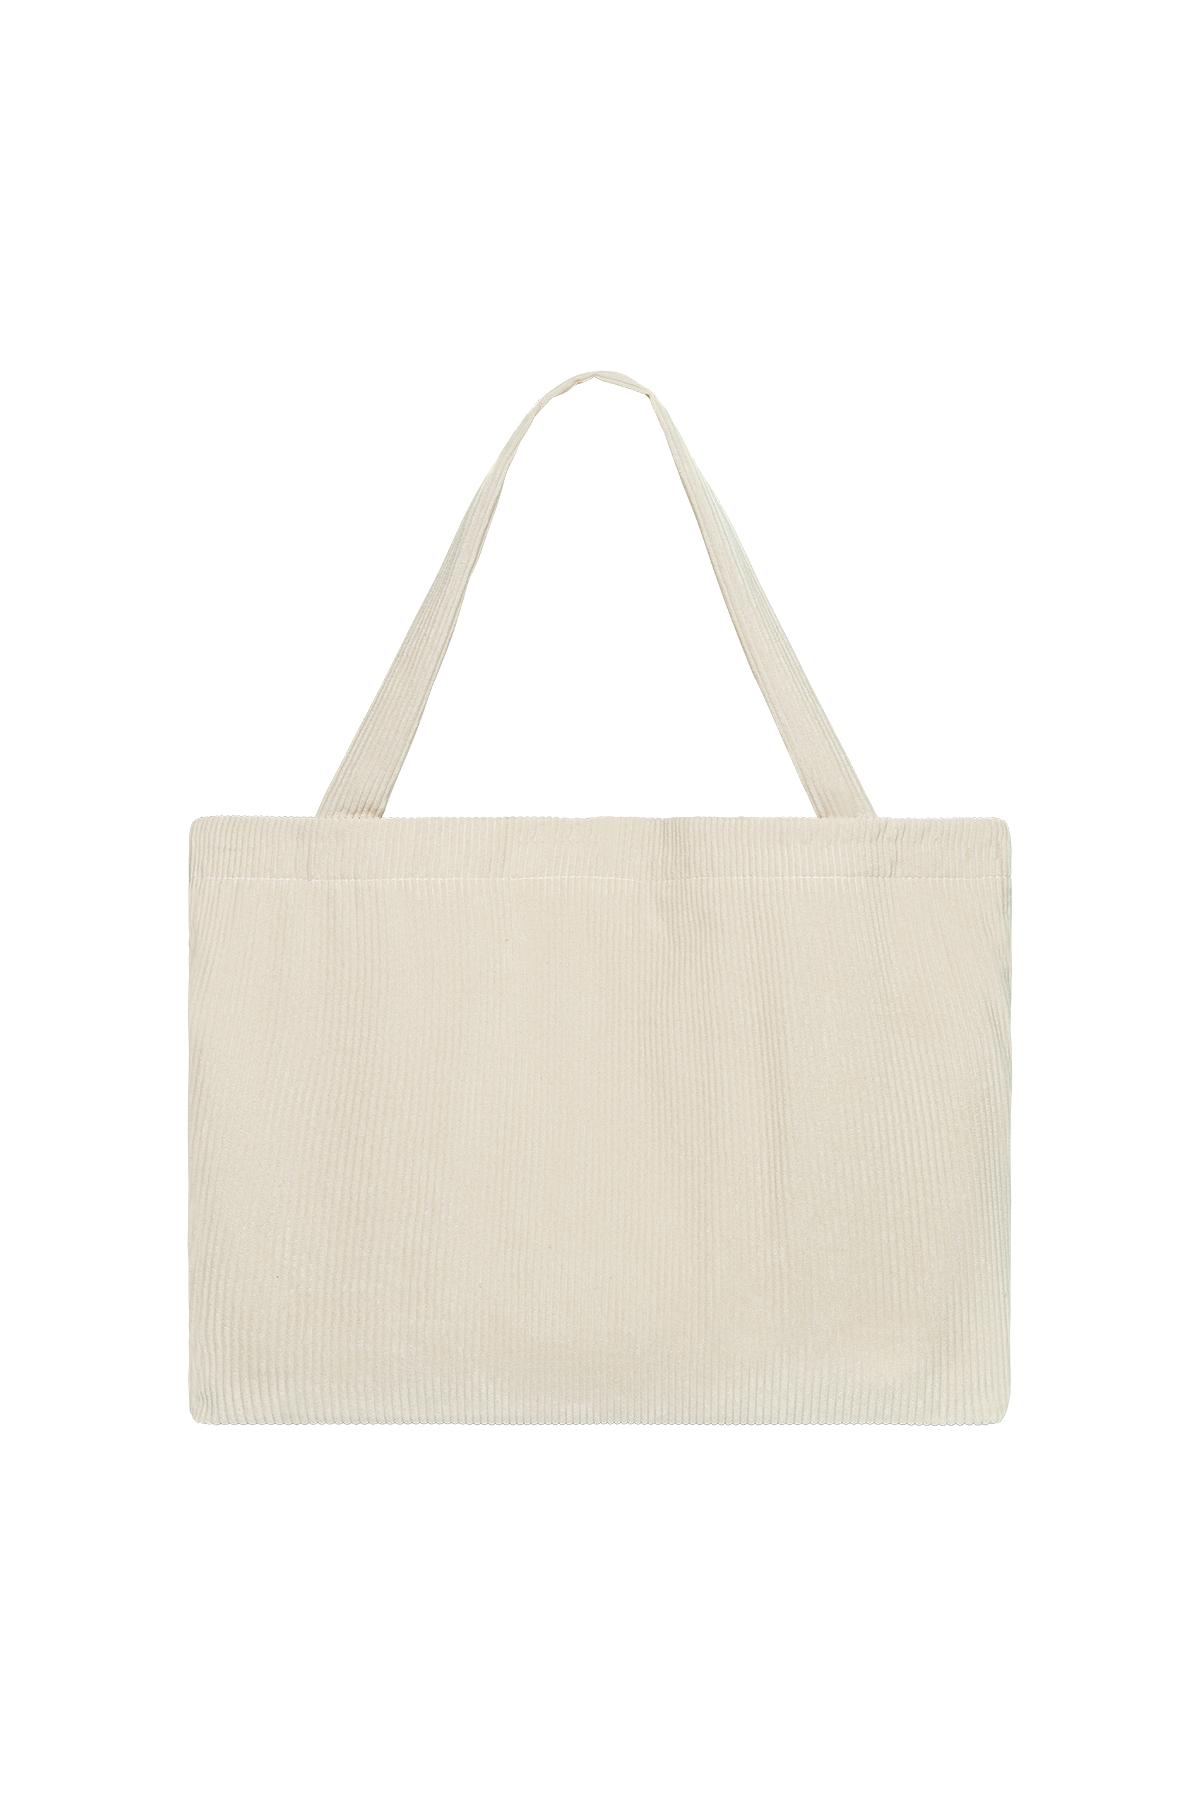 Alışveriş çantası kaburga kumaş Off-white Polyester h5 